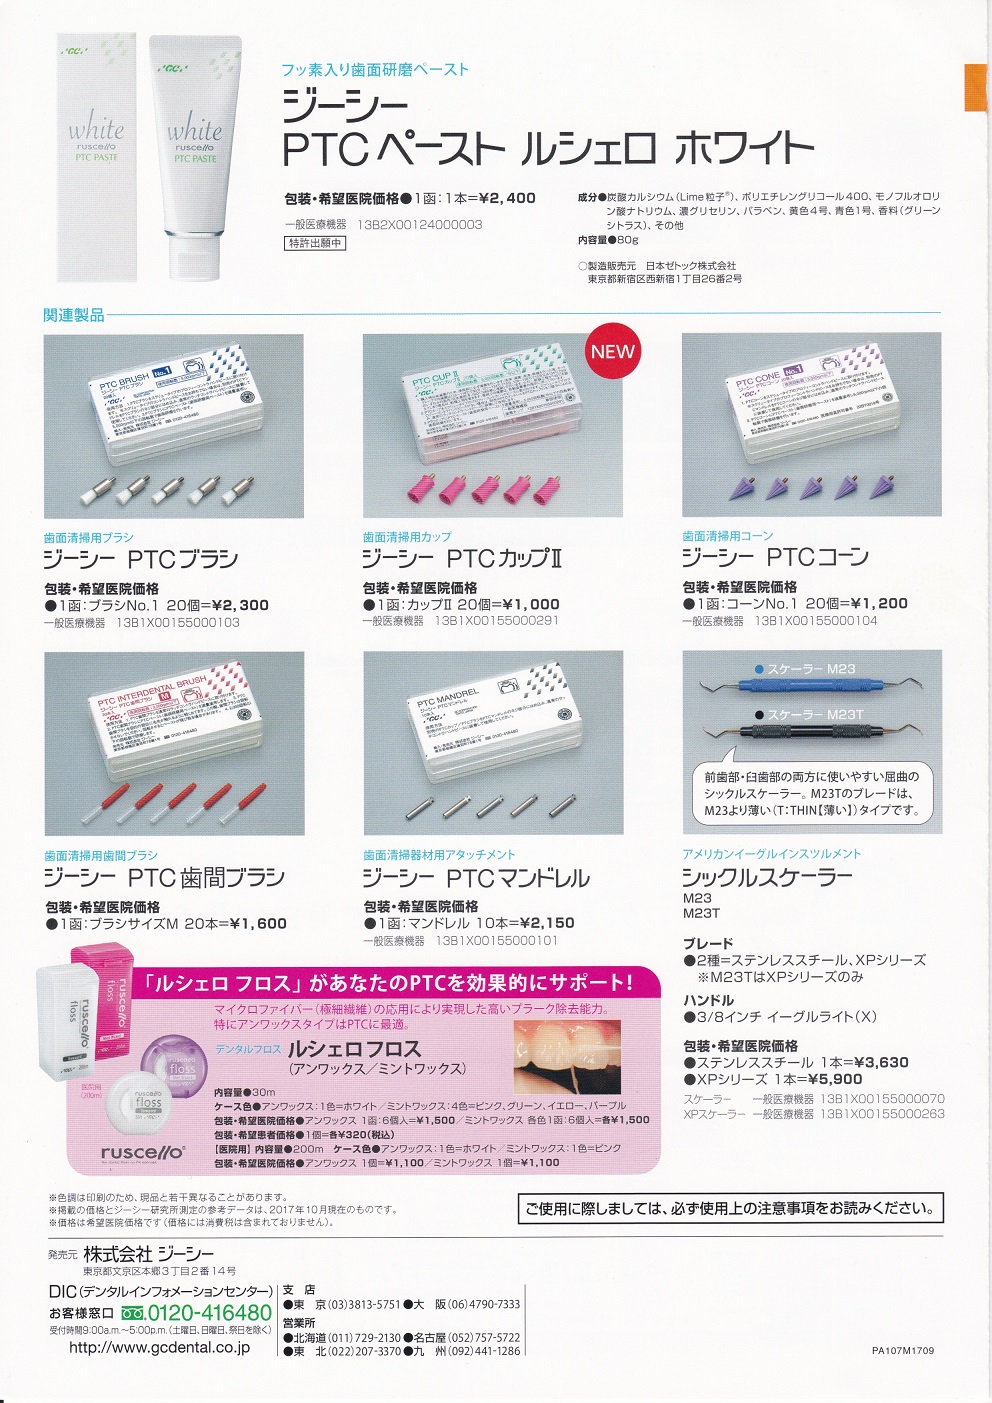 ジーシーＰＴＣペースト ルシェロホワイト』 | 新製品情報,製品情報 | 西京歯科商会